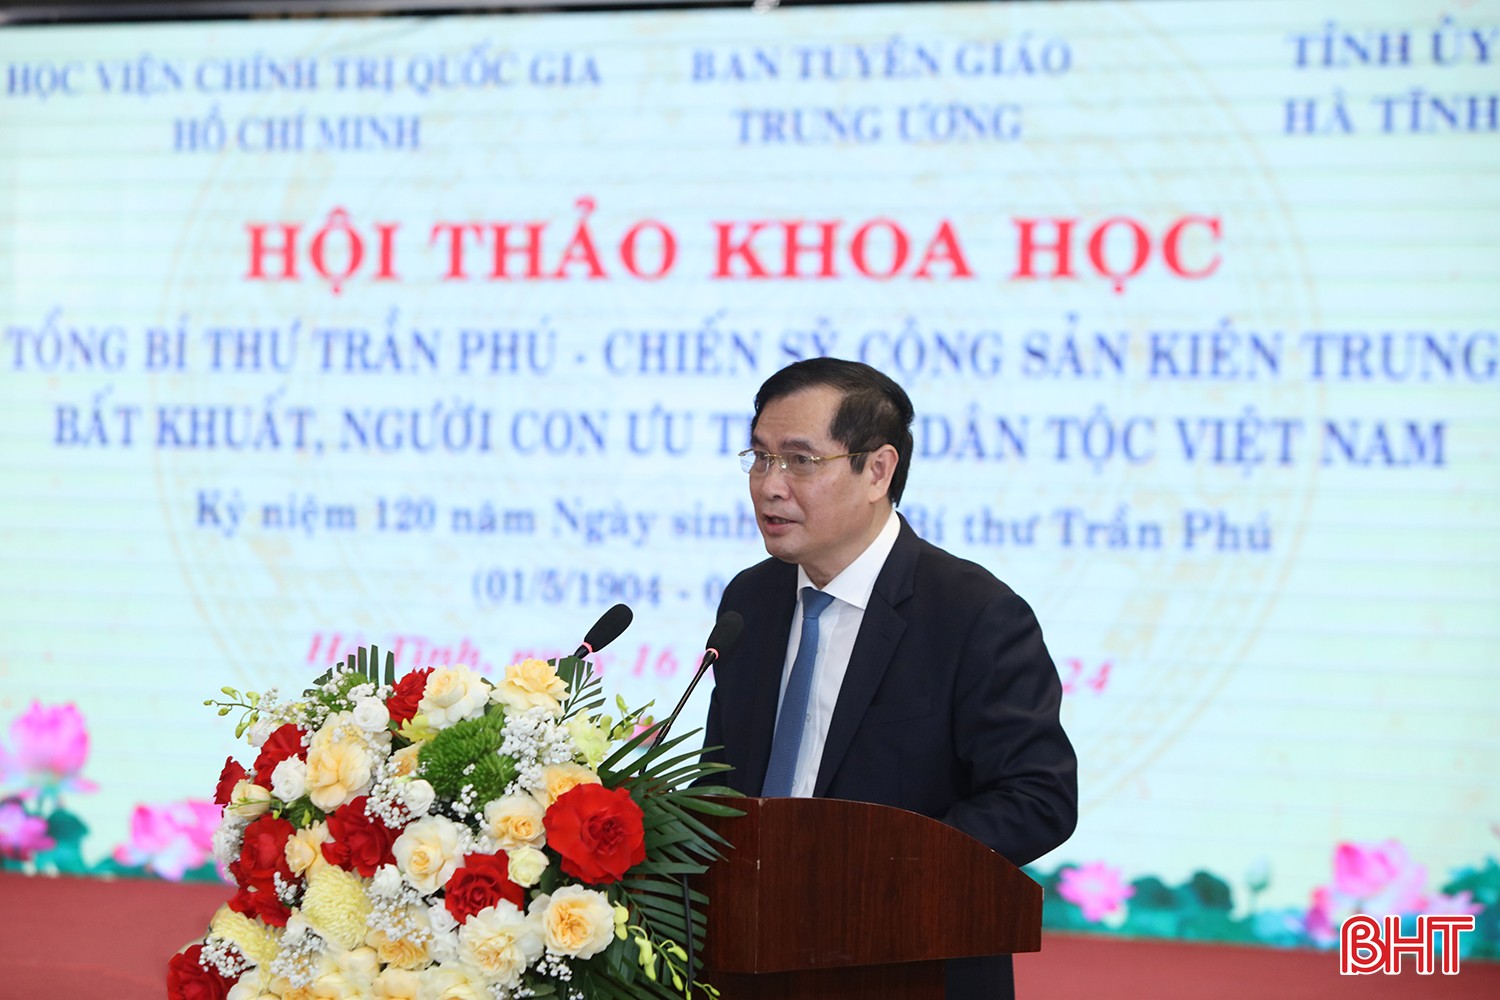 Phó Trưởng ban Tuyên giáo Trung ương Phan Xuân Thủy phát biểu tổng kết hội thảo.